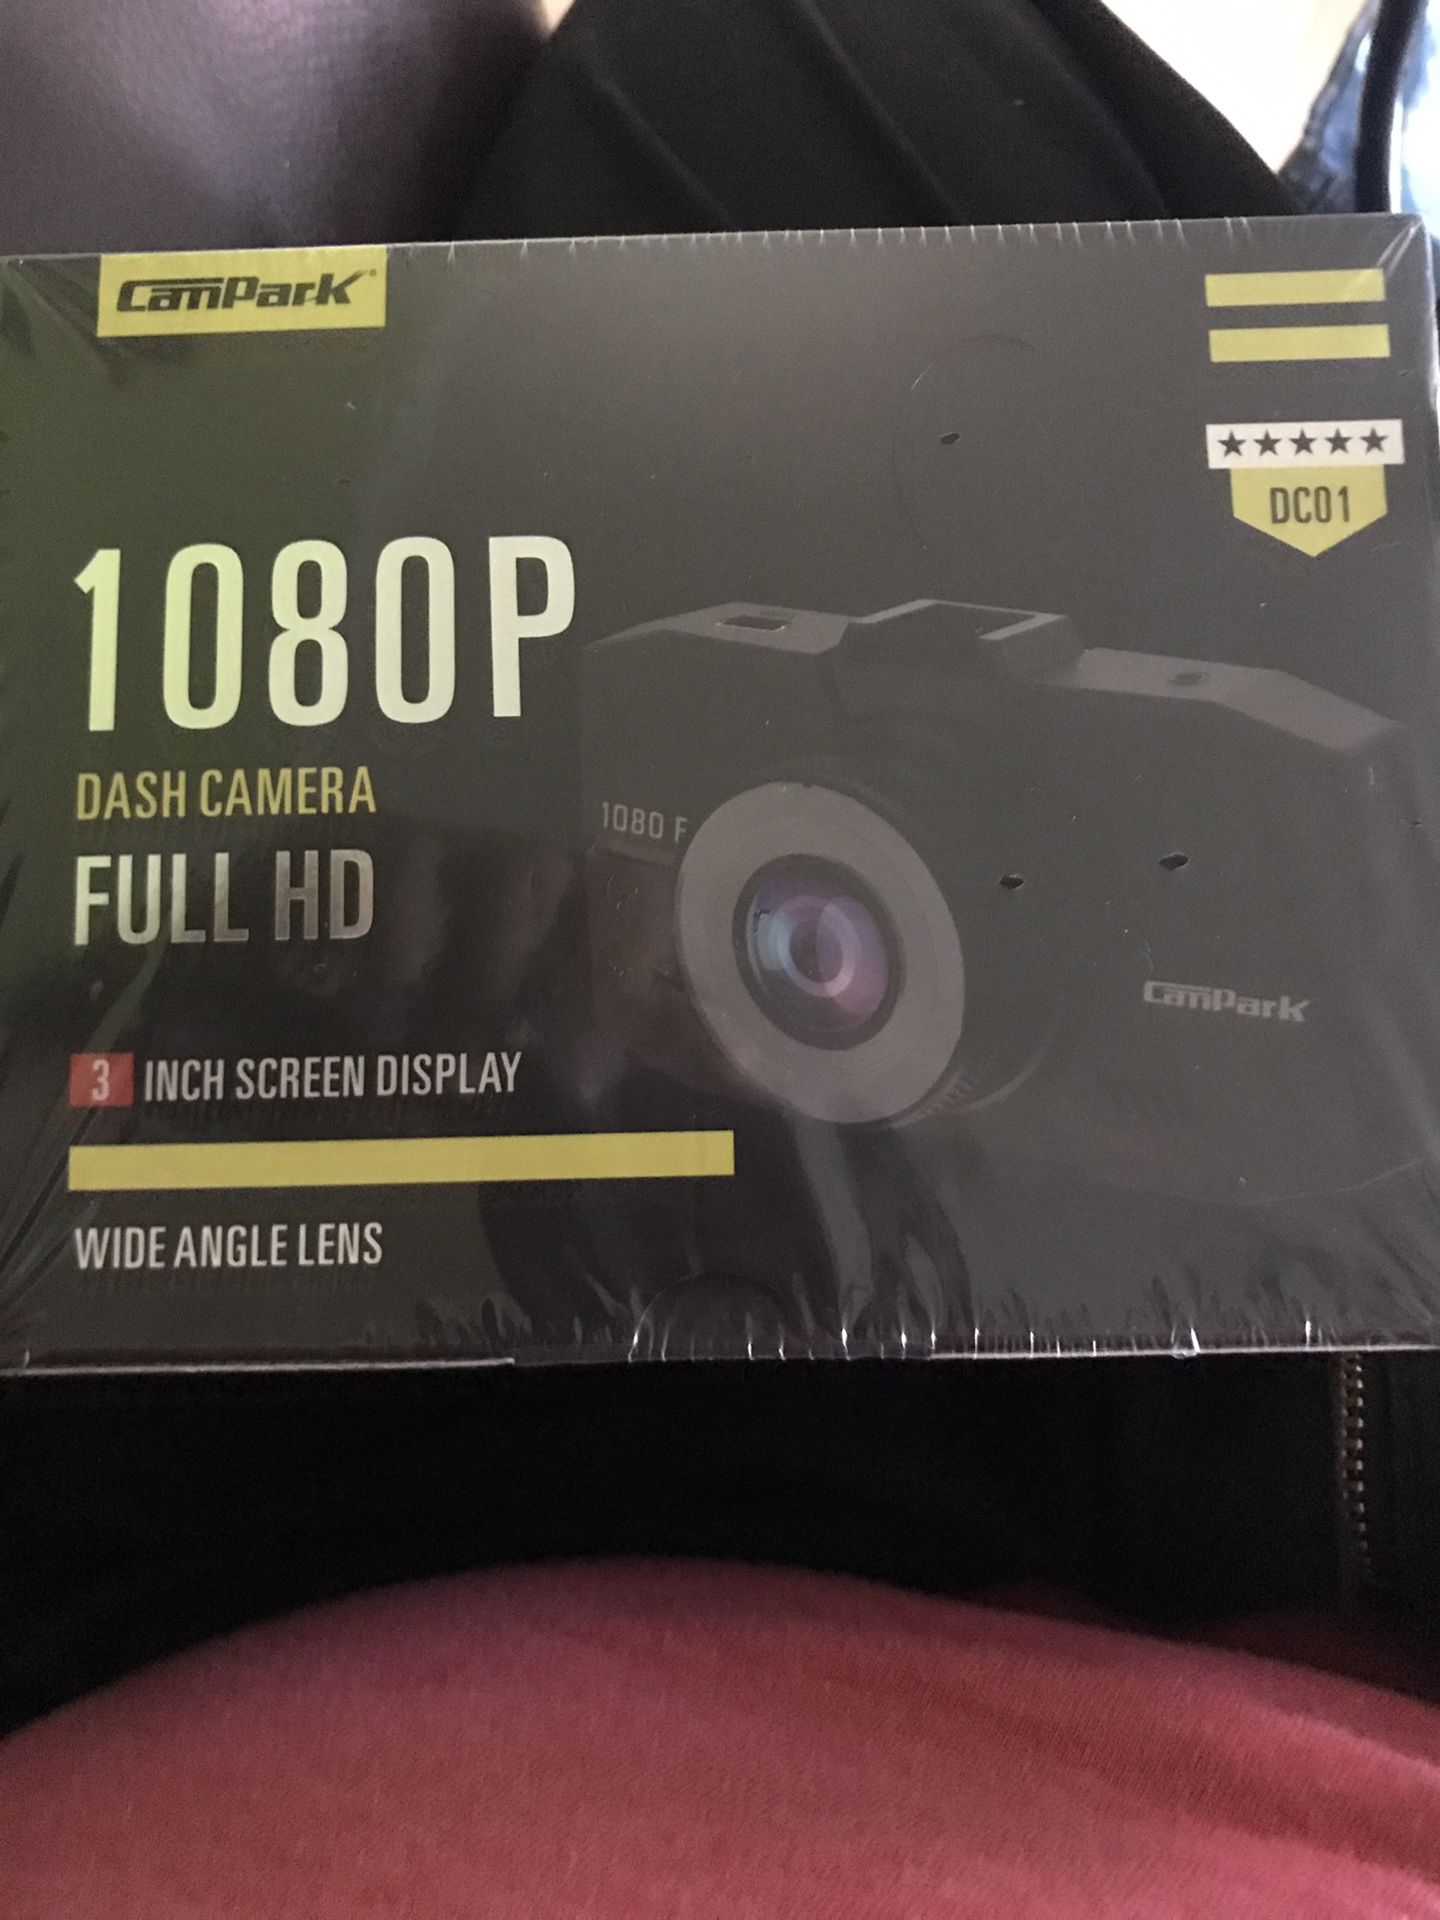 1080p dash cam camera full hd 3inch screen